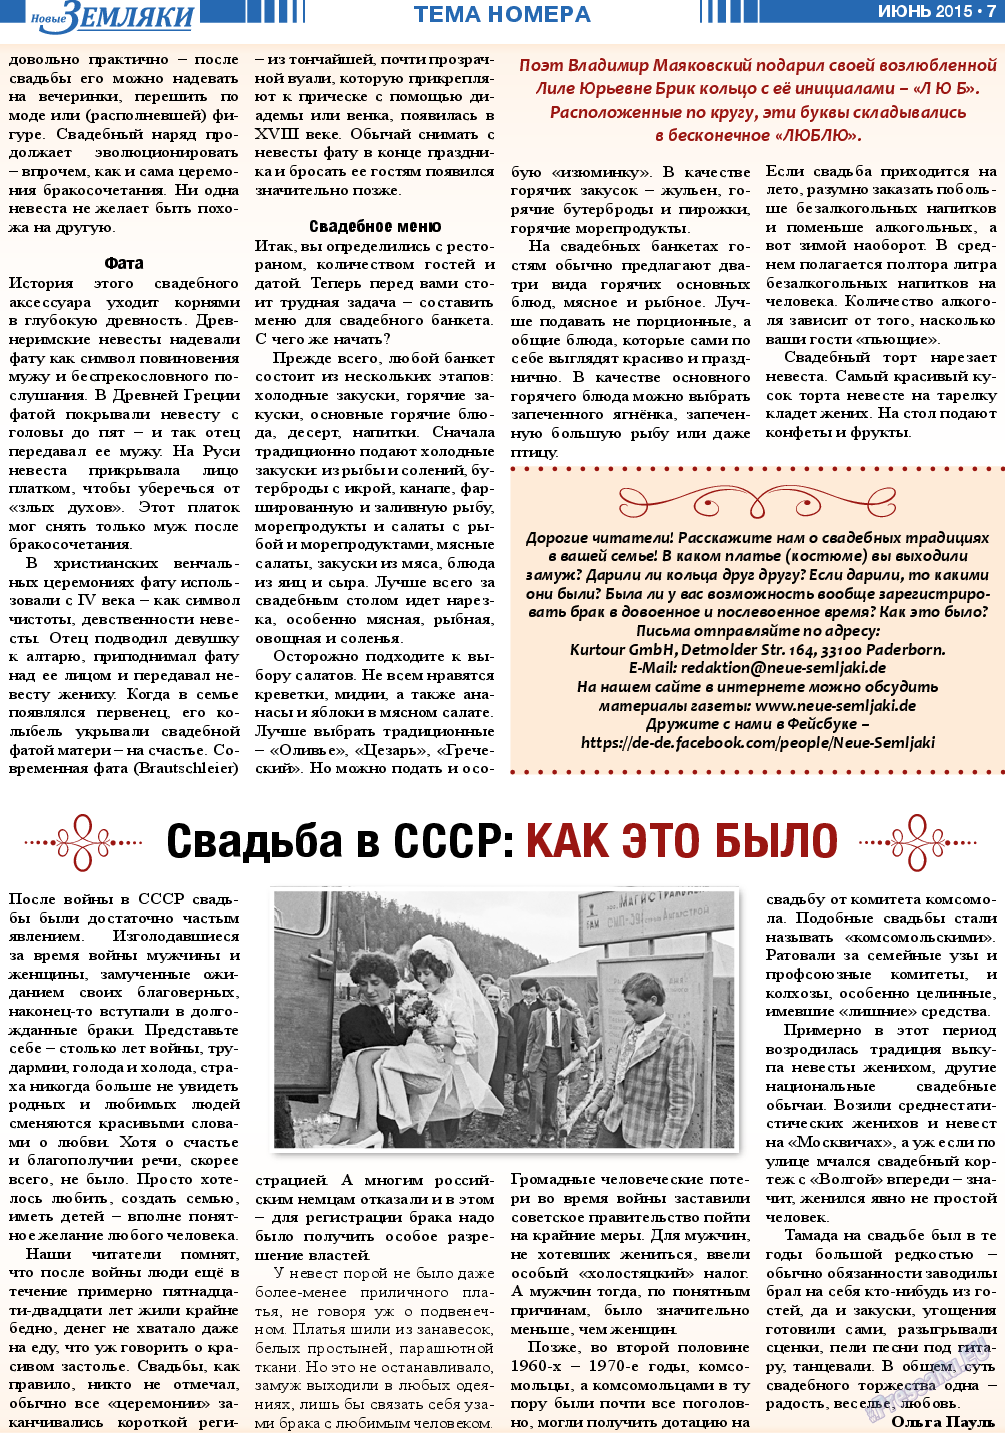 Новые Земляки, газета. 2015 №6 стр.7